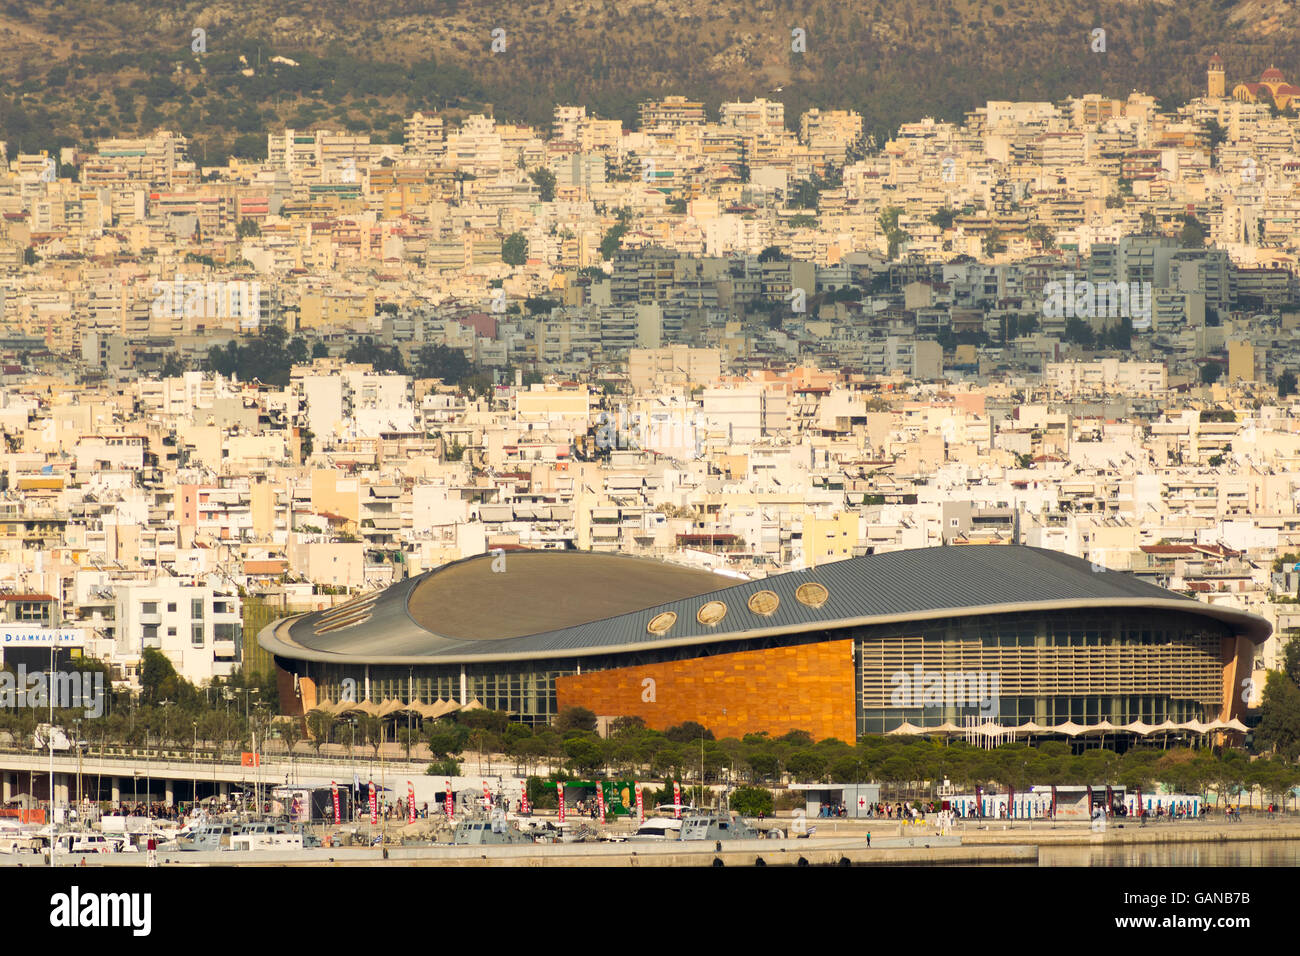 Athen, Griechenland 7 Jumeirah 2016. Tae Kwon-Stadion in Griechenland Piräus. Blick auf die Stadt mit dem Stadion als Vordergrund Landschaft. Stockfoto